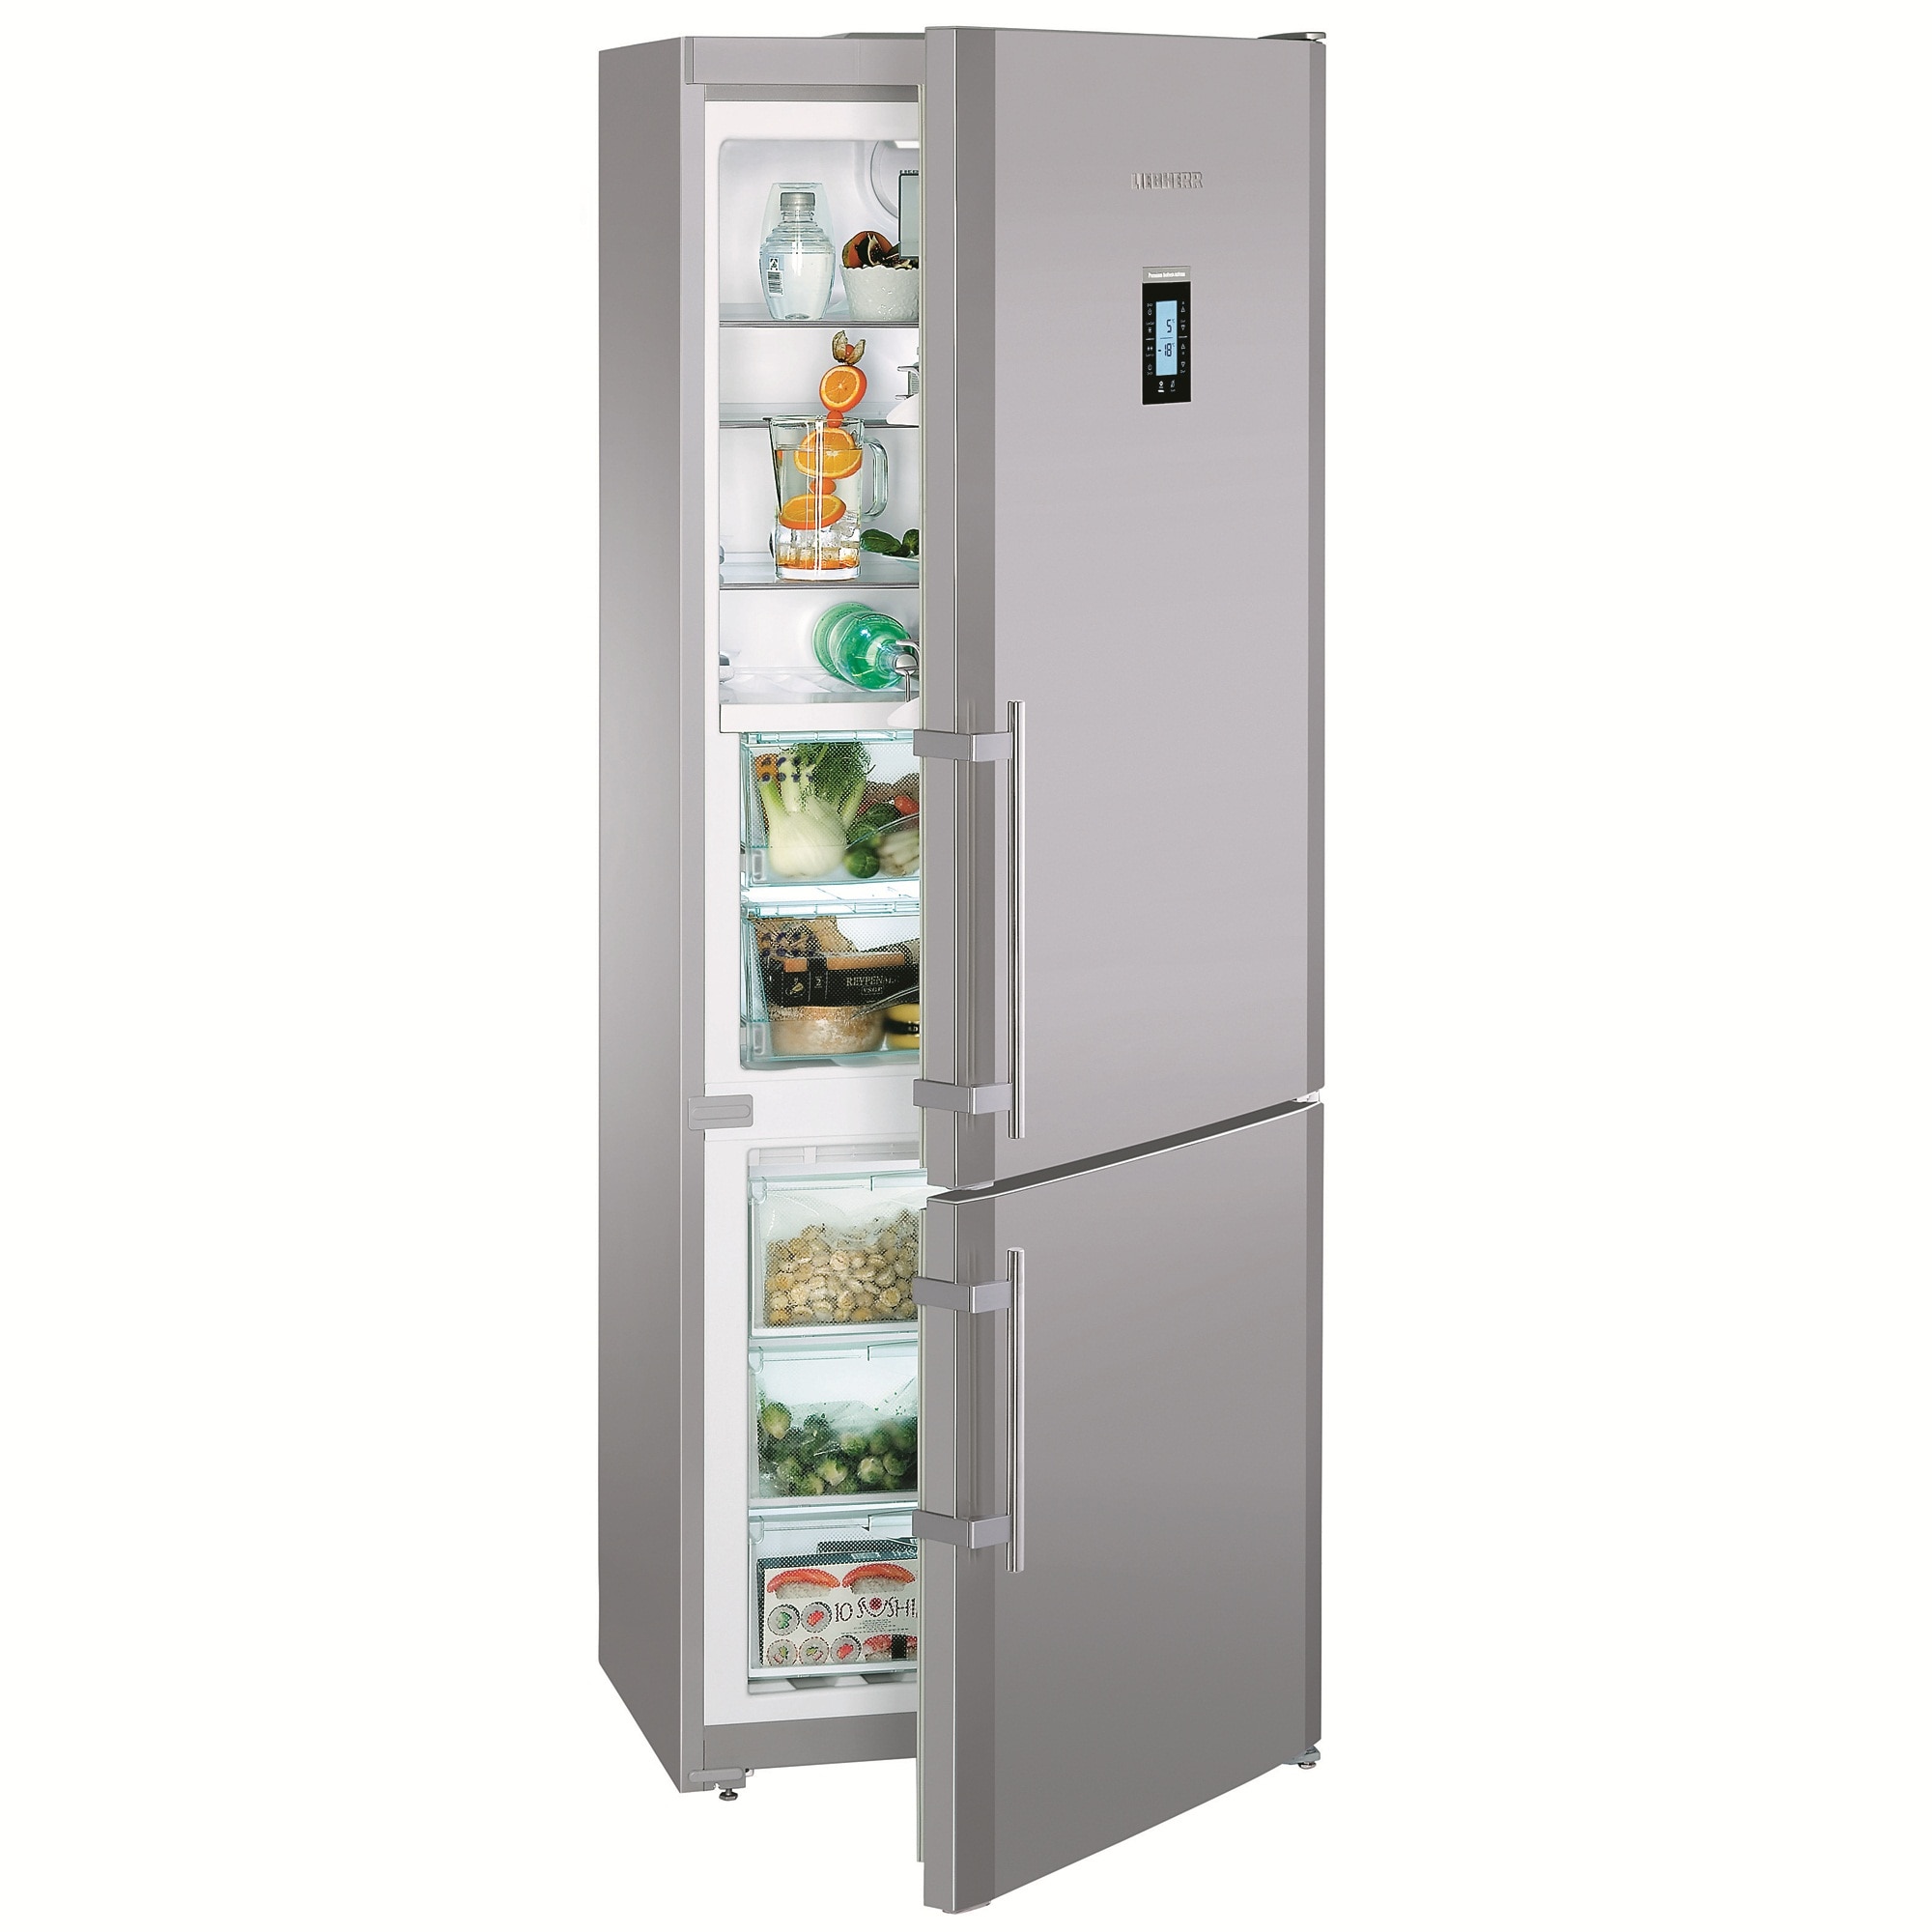 Купить холодильник в сочи. Холодильник Liebherr CNPESF 5156. Холодильник Liebherr CNPES 5156. Холодильник Liebherr CNPESF 5156, серебристый. Liebherr холодильники CNPESF 5156-21 001.